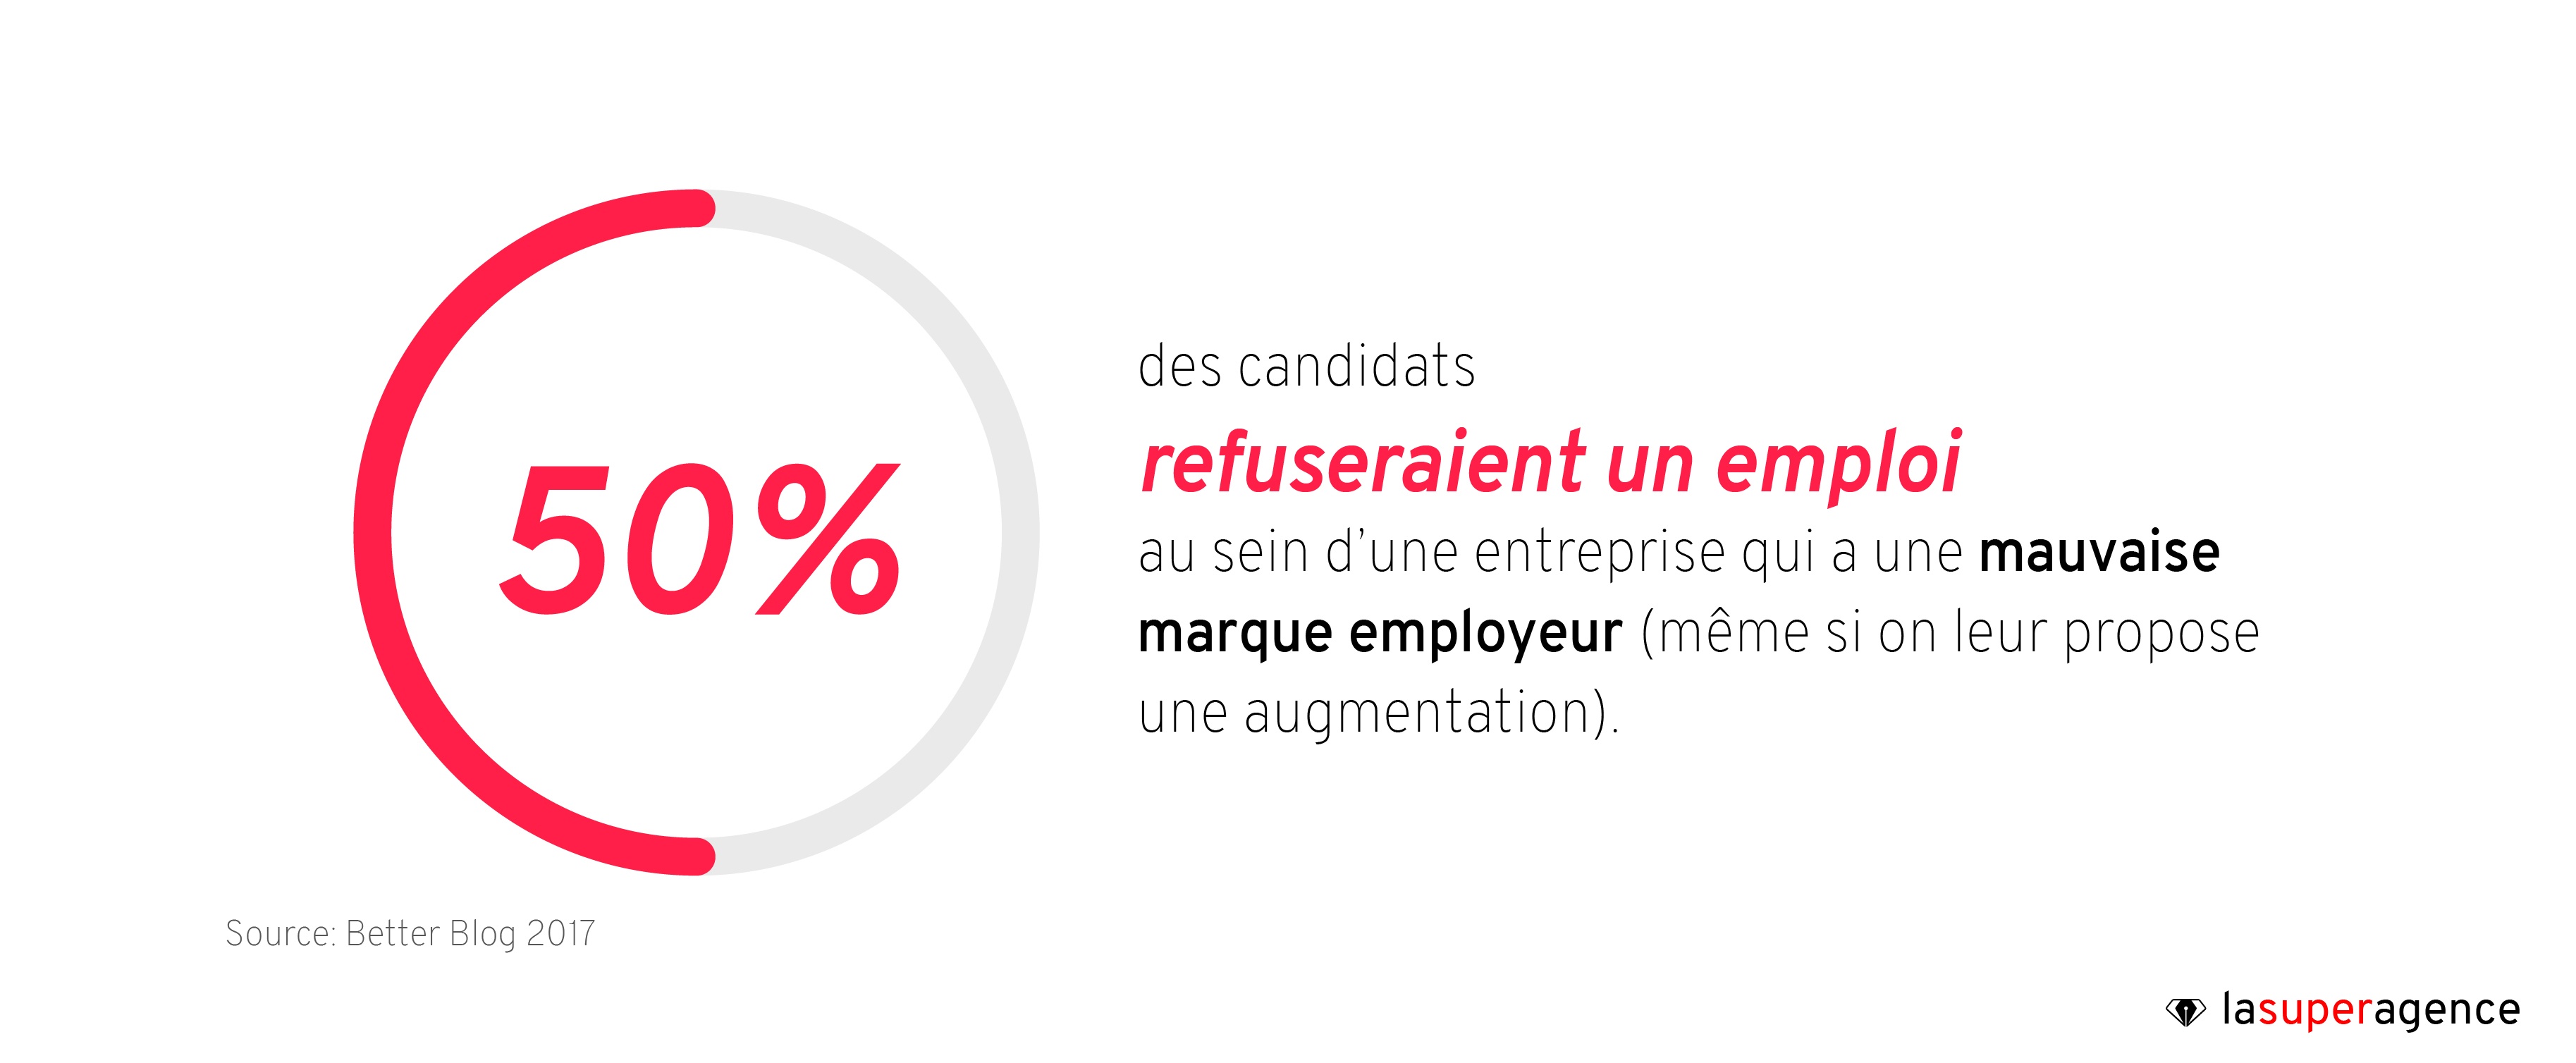 50% des candidats refuseraient un emploi au sein d'une entreprise qui a une mauvaise marque employeur 